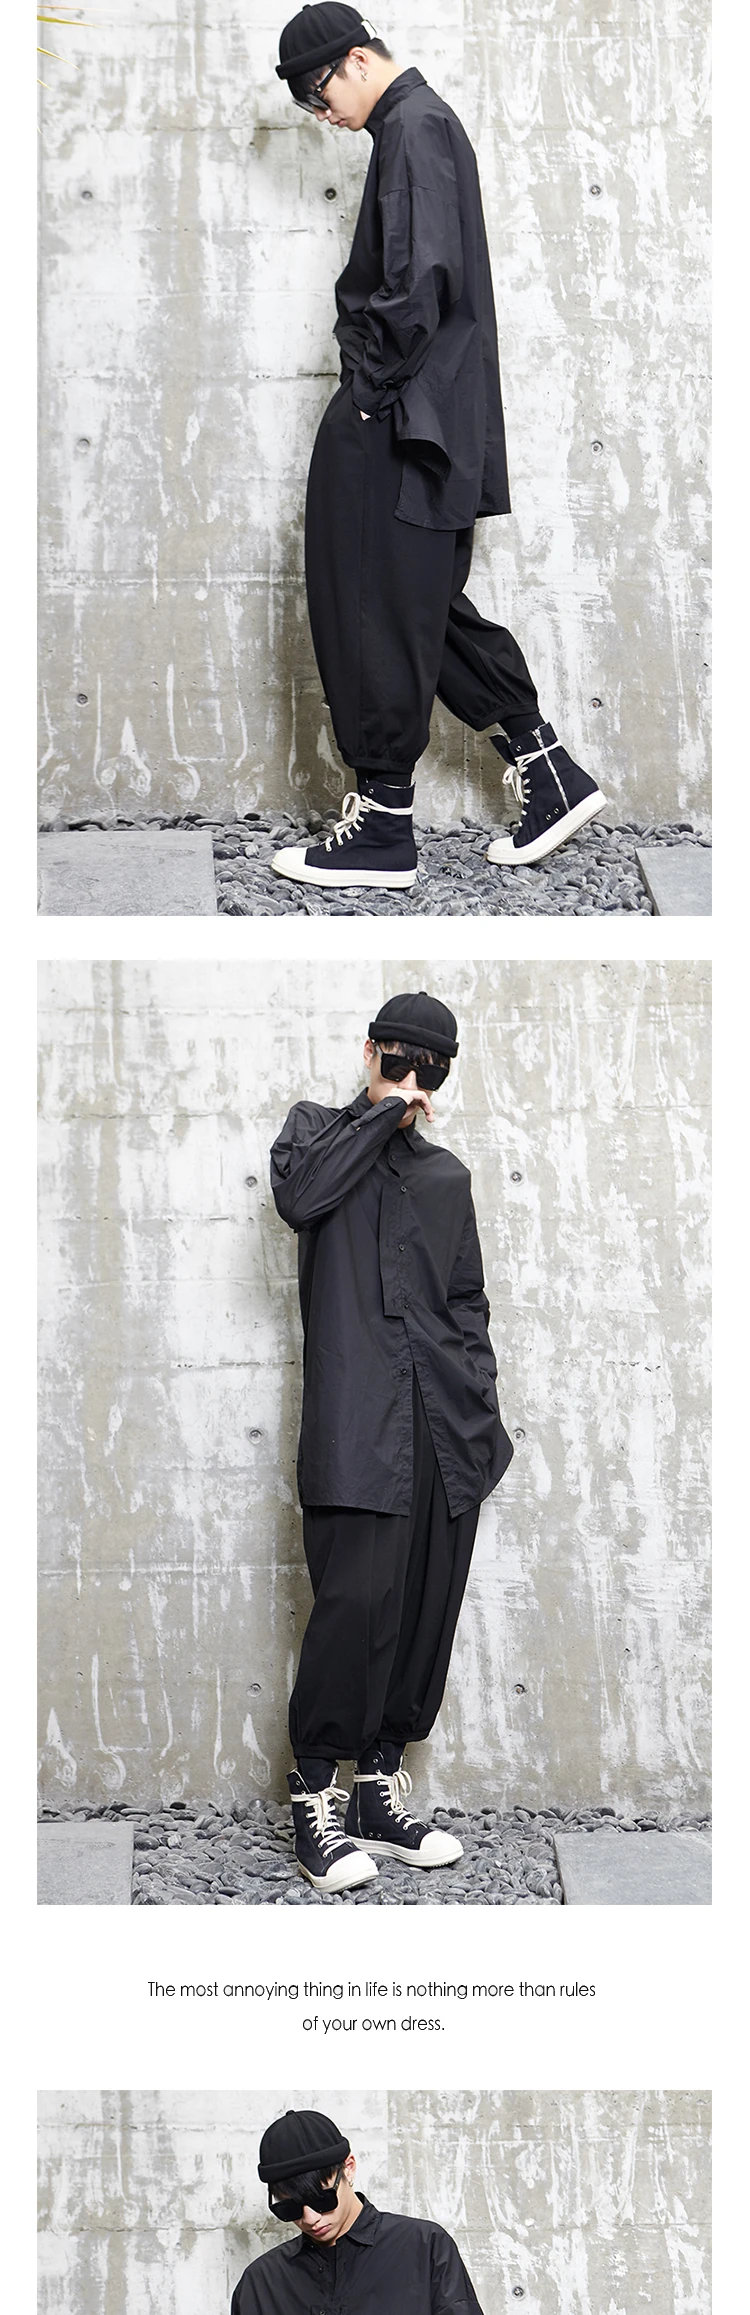 YWSRLM дизайн нового сезона Ямамото Яо Стиль Темный японского длинная Мужская рубашка с длинным рукавом черного цвета в стиле «хип-хоп», топы, Y008